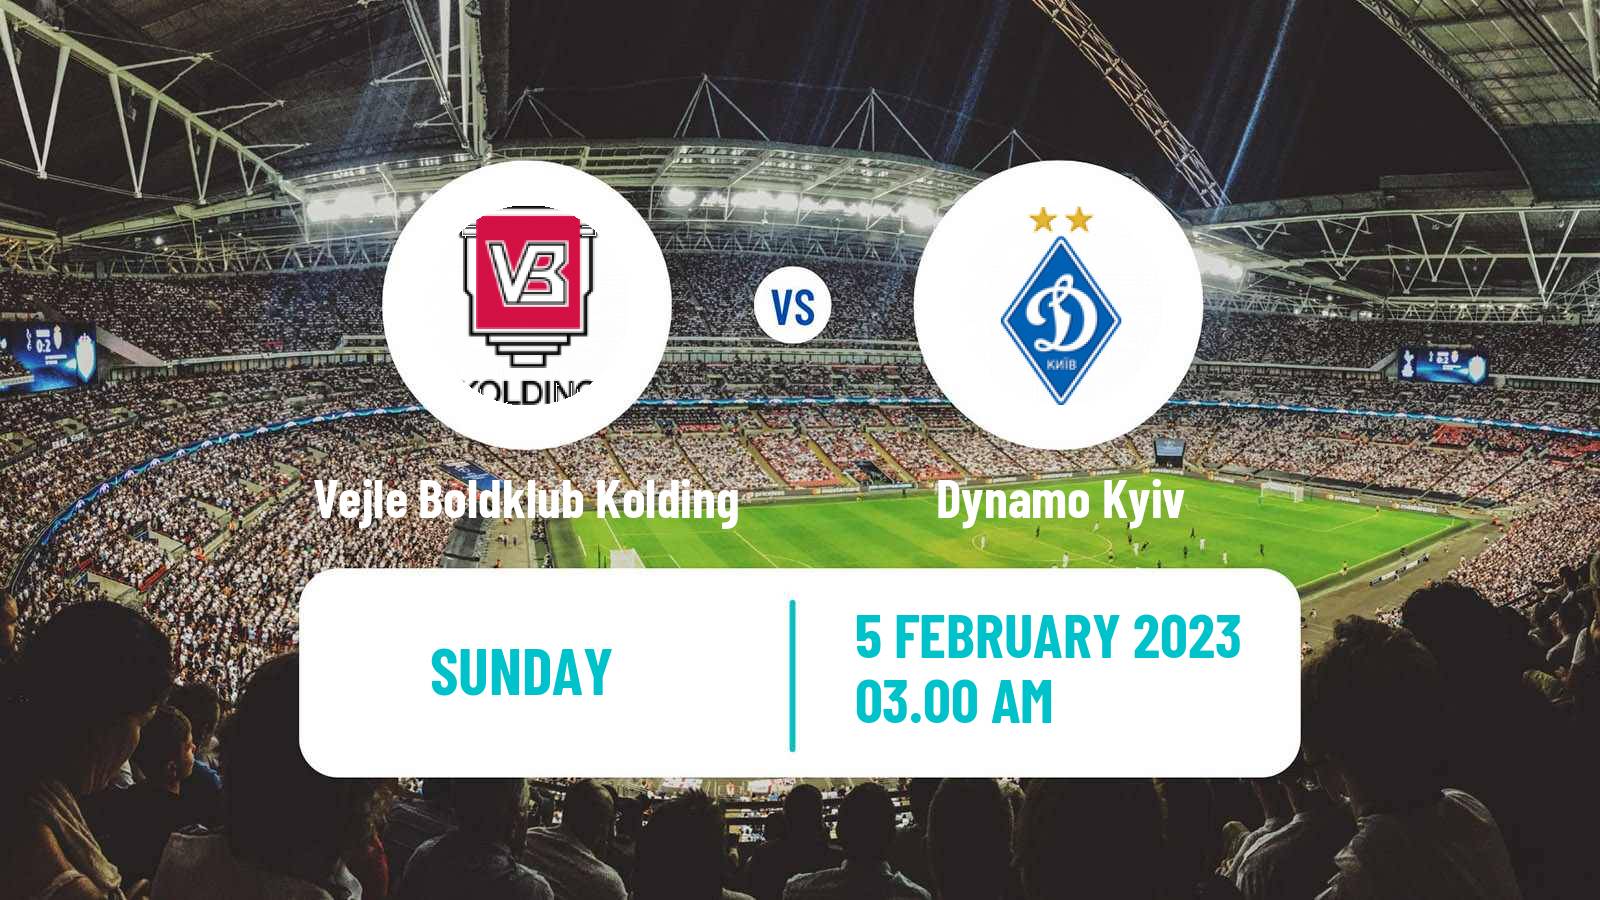 Soccer Club Friendly Vejle Boldklub Kolding - Dynamo Kyiv